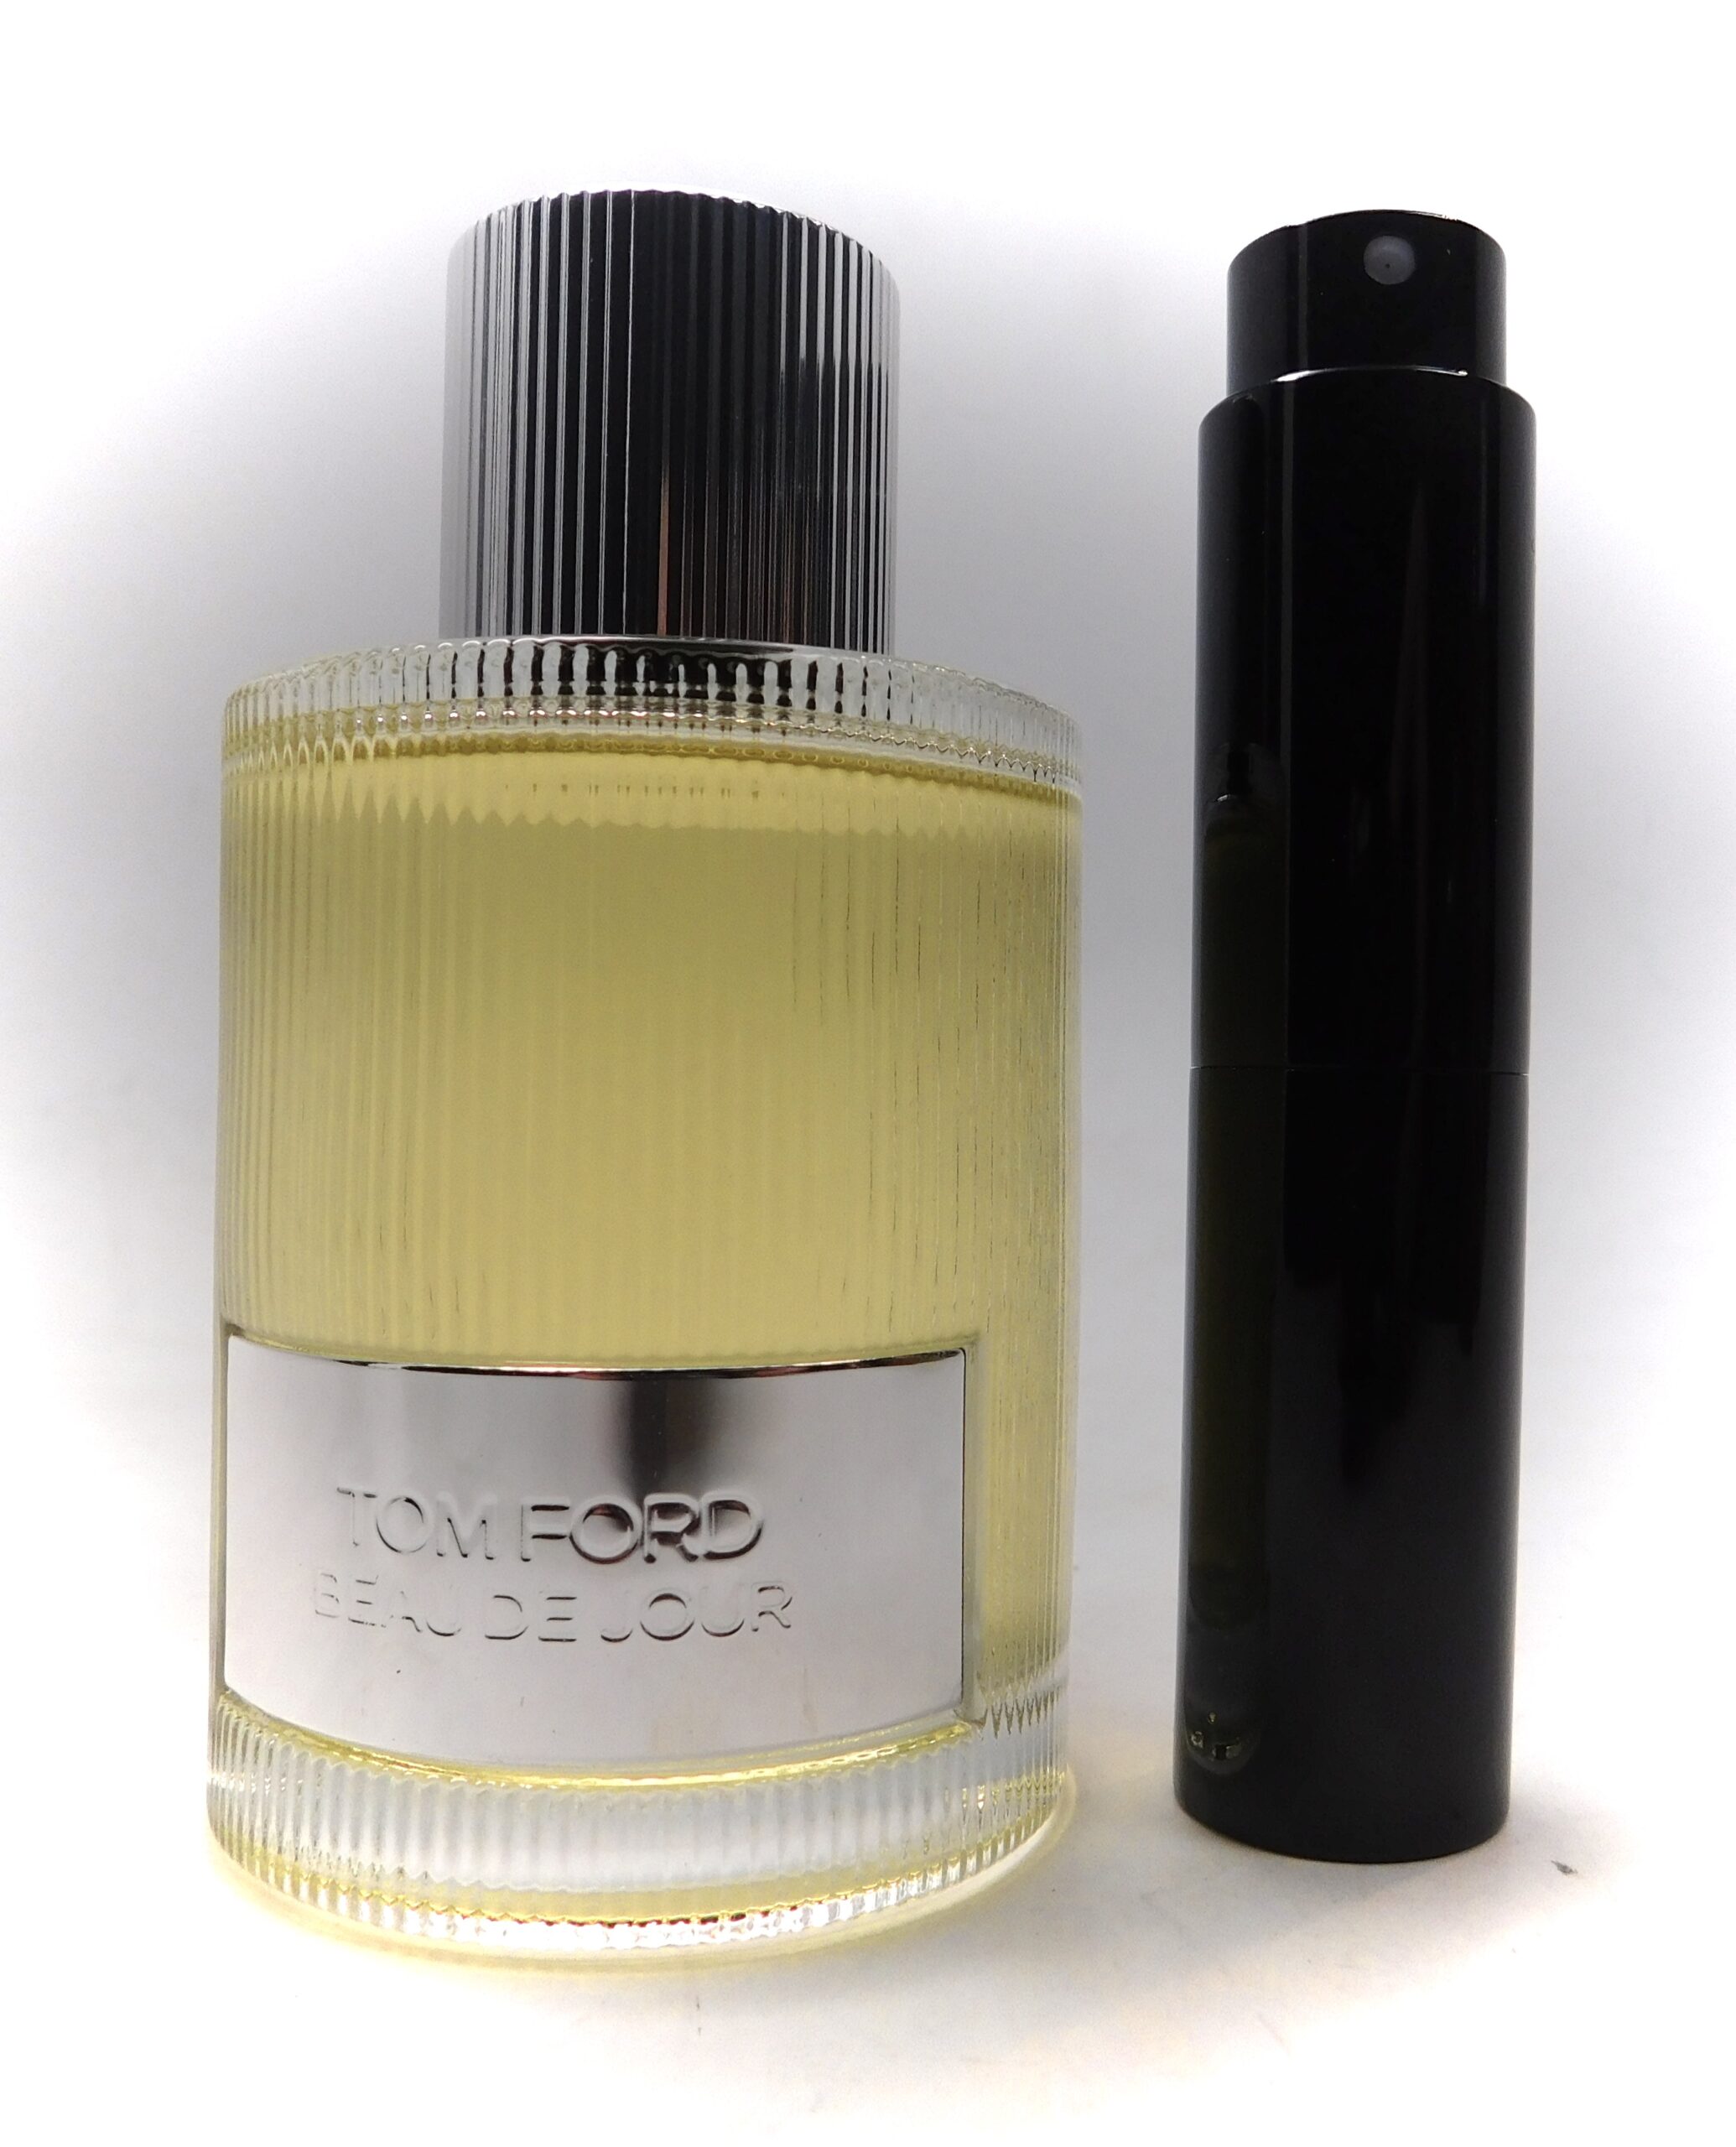 Tom Beau De Jour Eau Parfum 8ml Travel cologne perfume EDP – Best Perfume